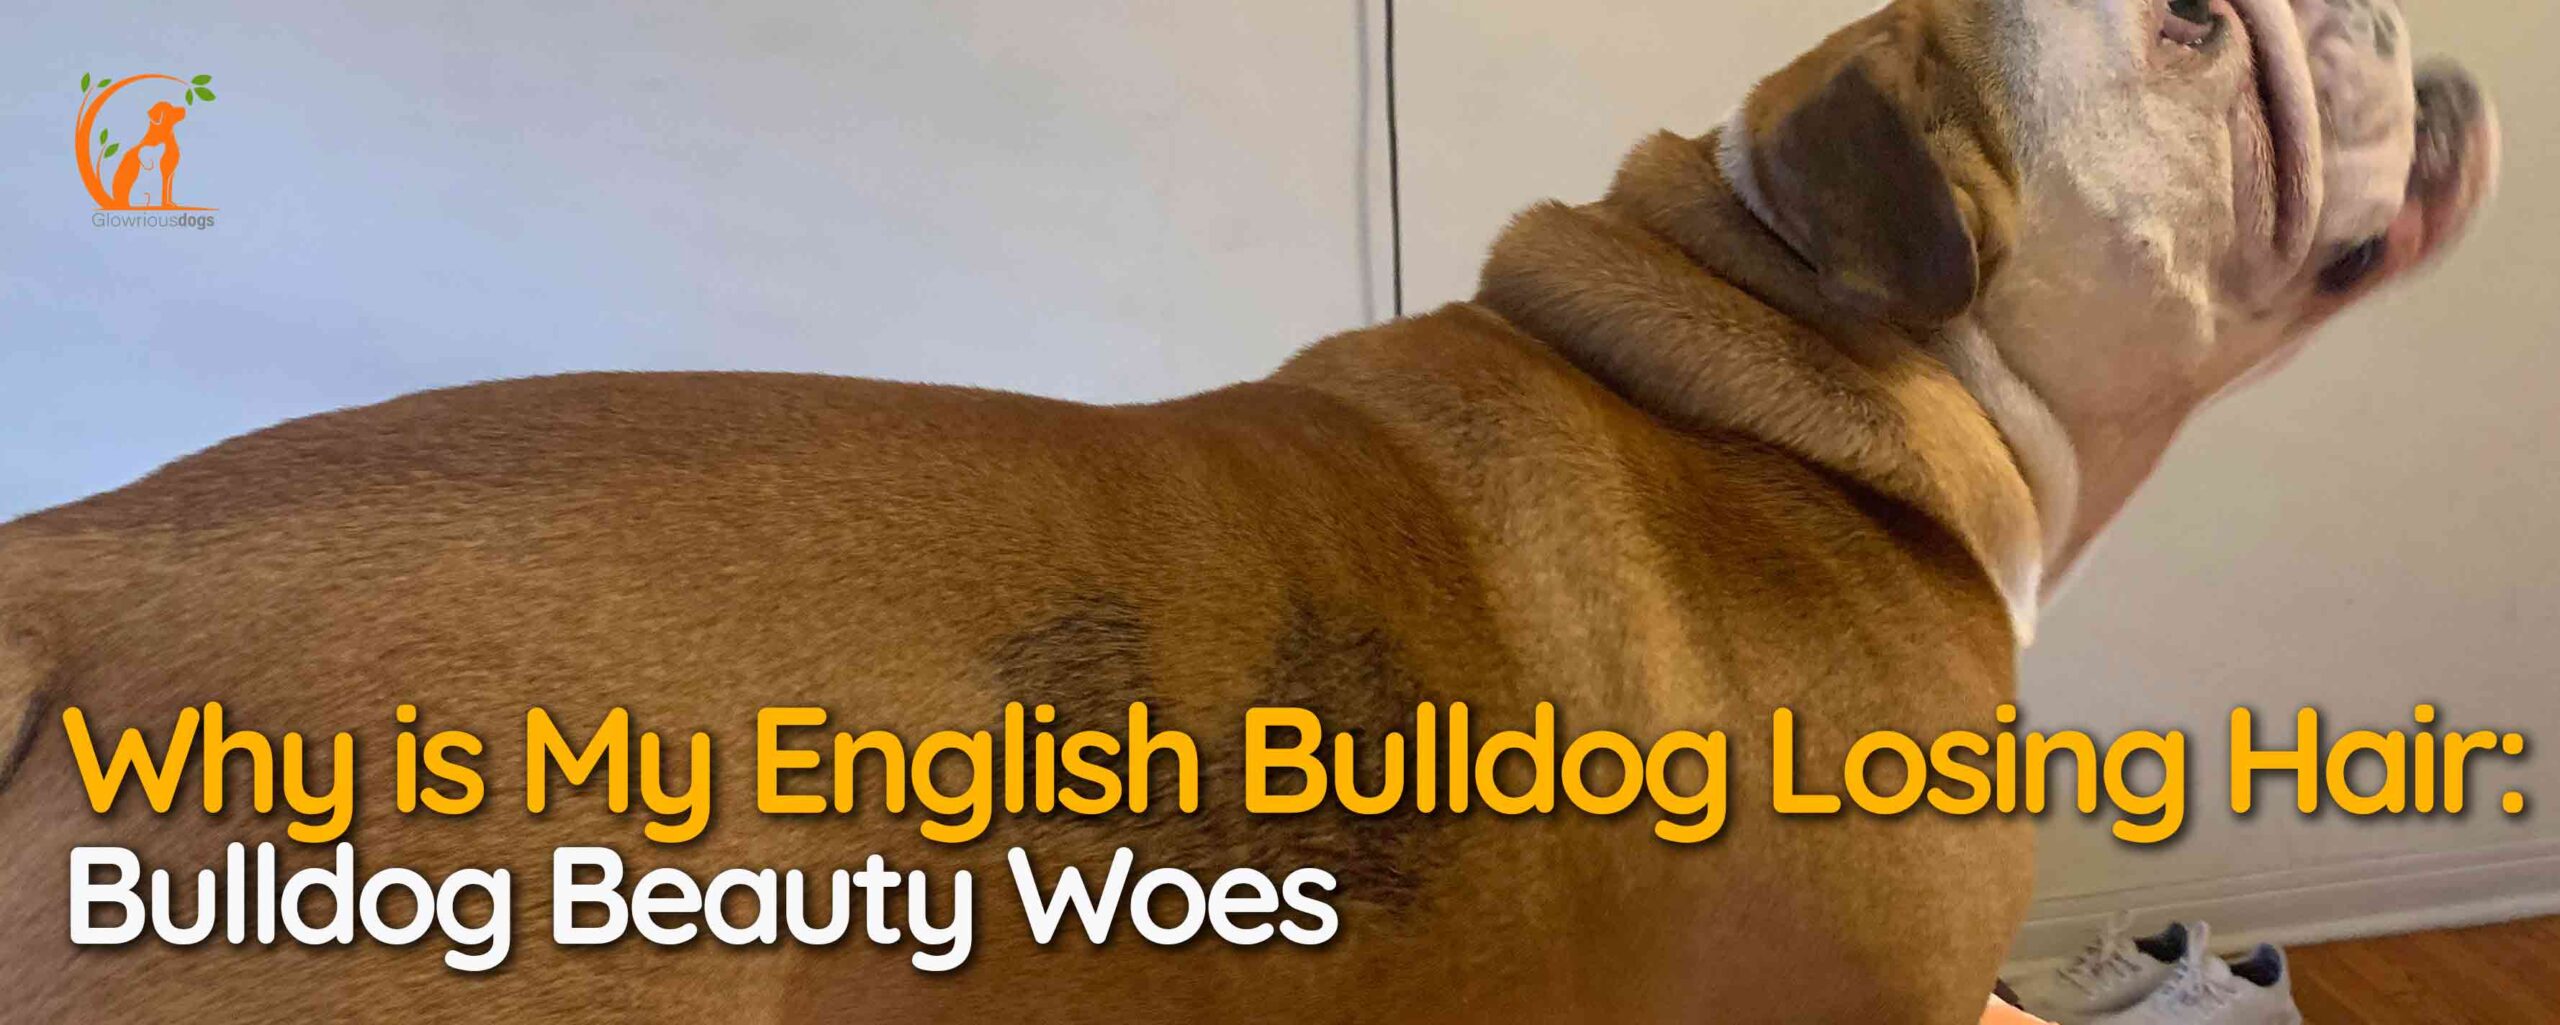 Why is My English Bulldog Losing Hair: Bulldog Beauty Woes